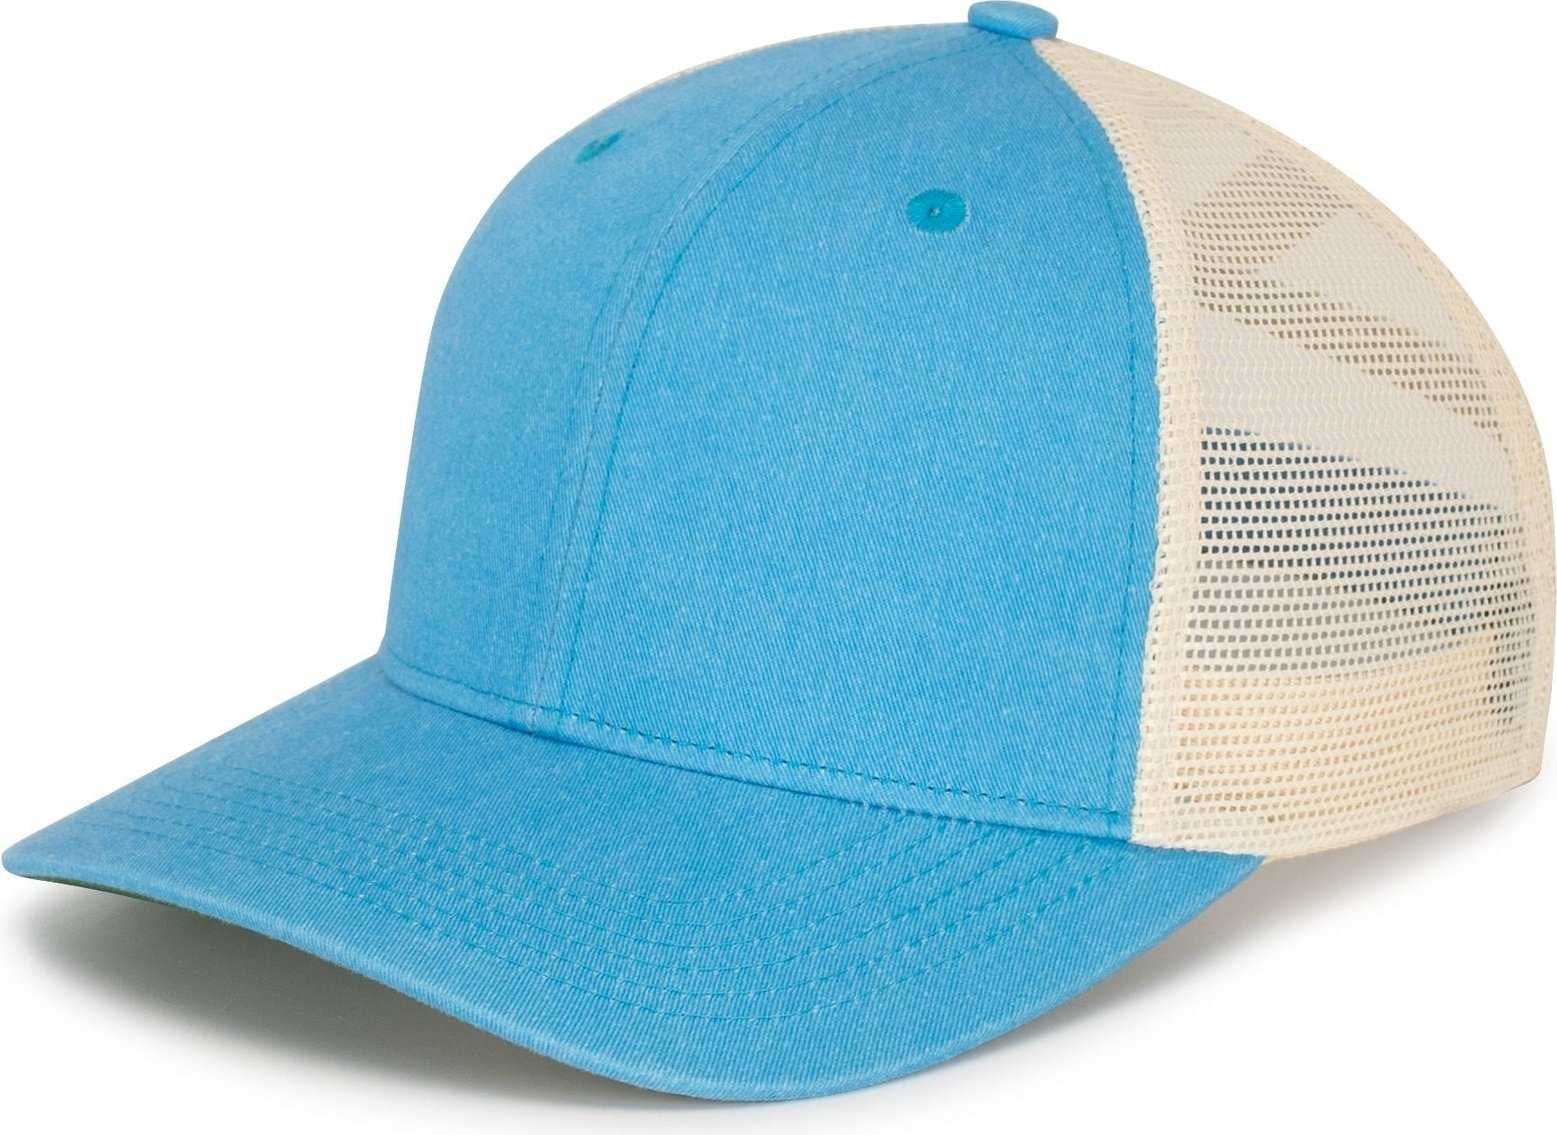 Pacific Headwear P130 Ladies Ponytail Cap - Light Blue Beige Light Blue - HIT a Double